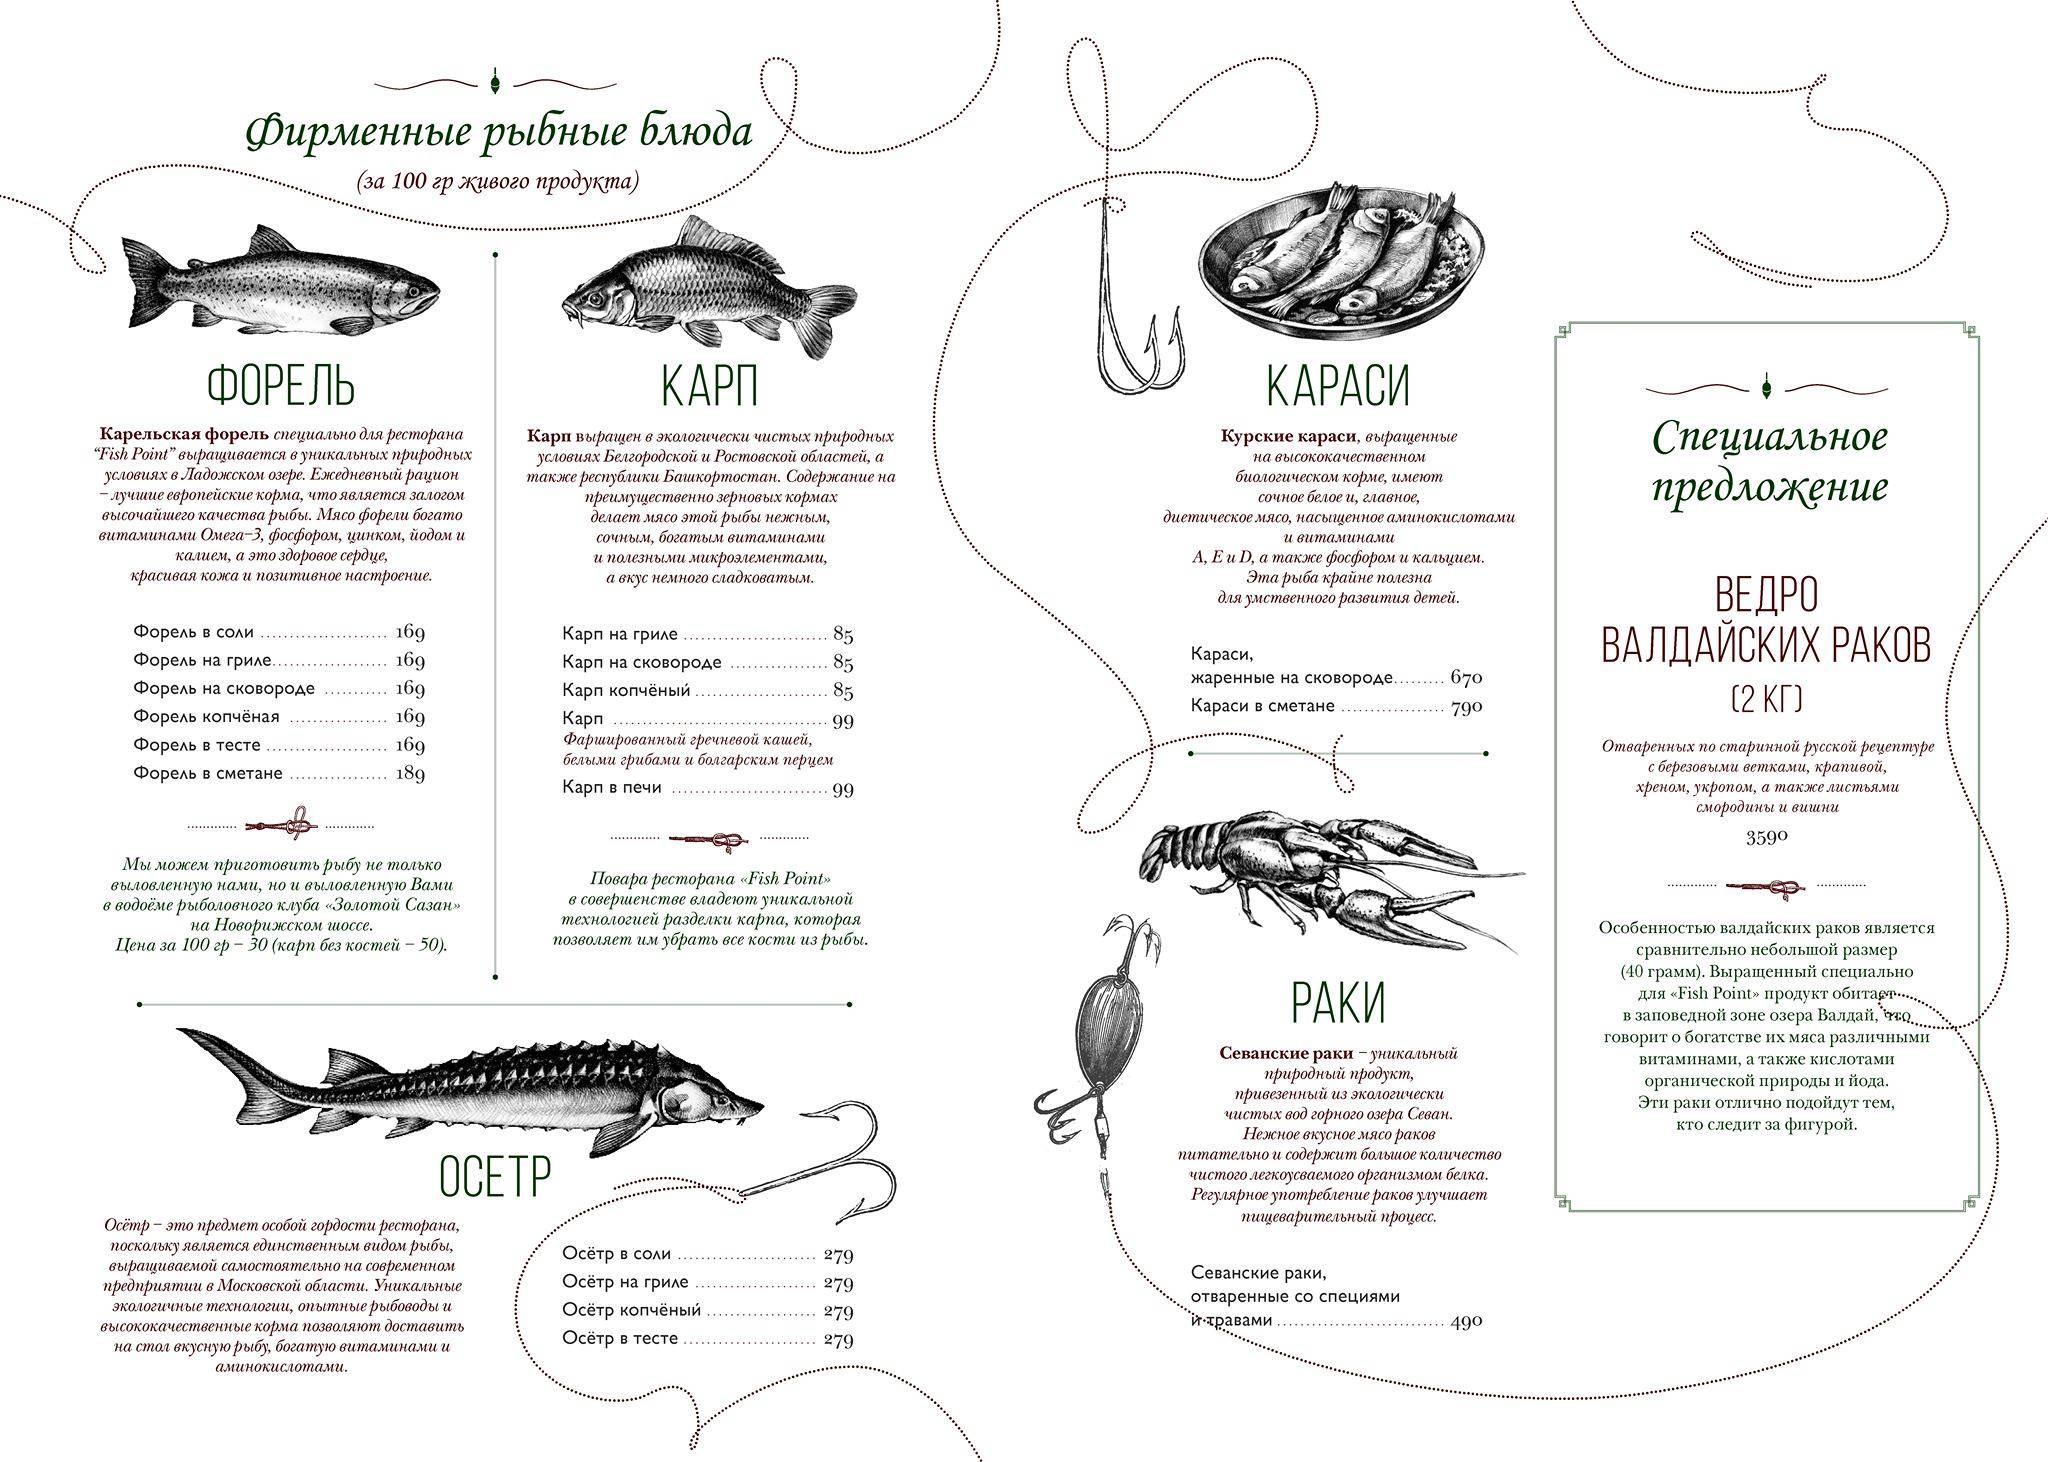 меню рыбного ресторана